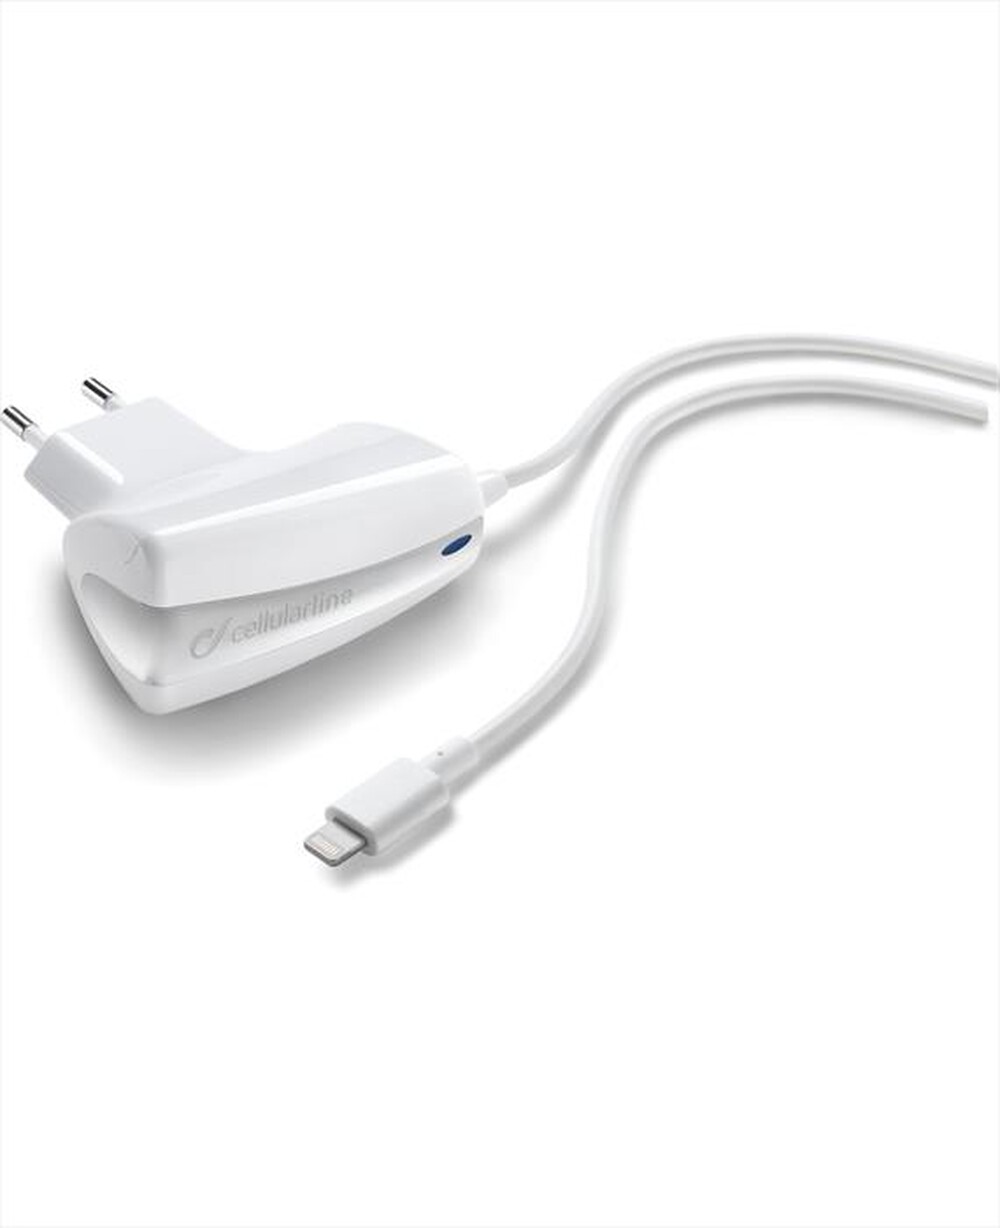 "CELLULARLINE - Charger Ultra Apple Lightning - Bianco"